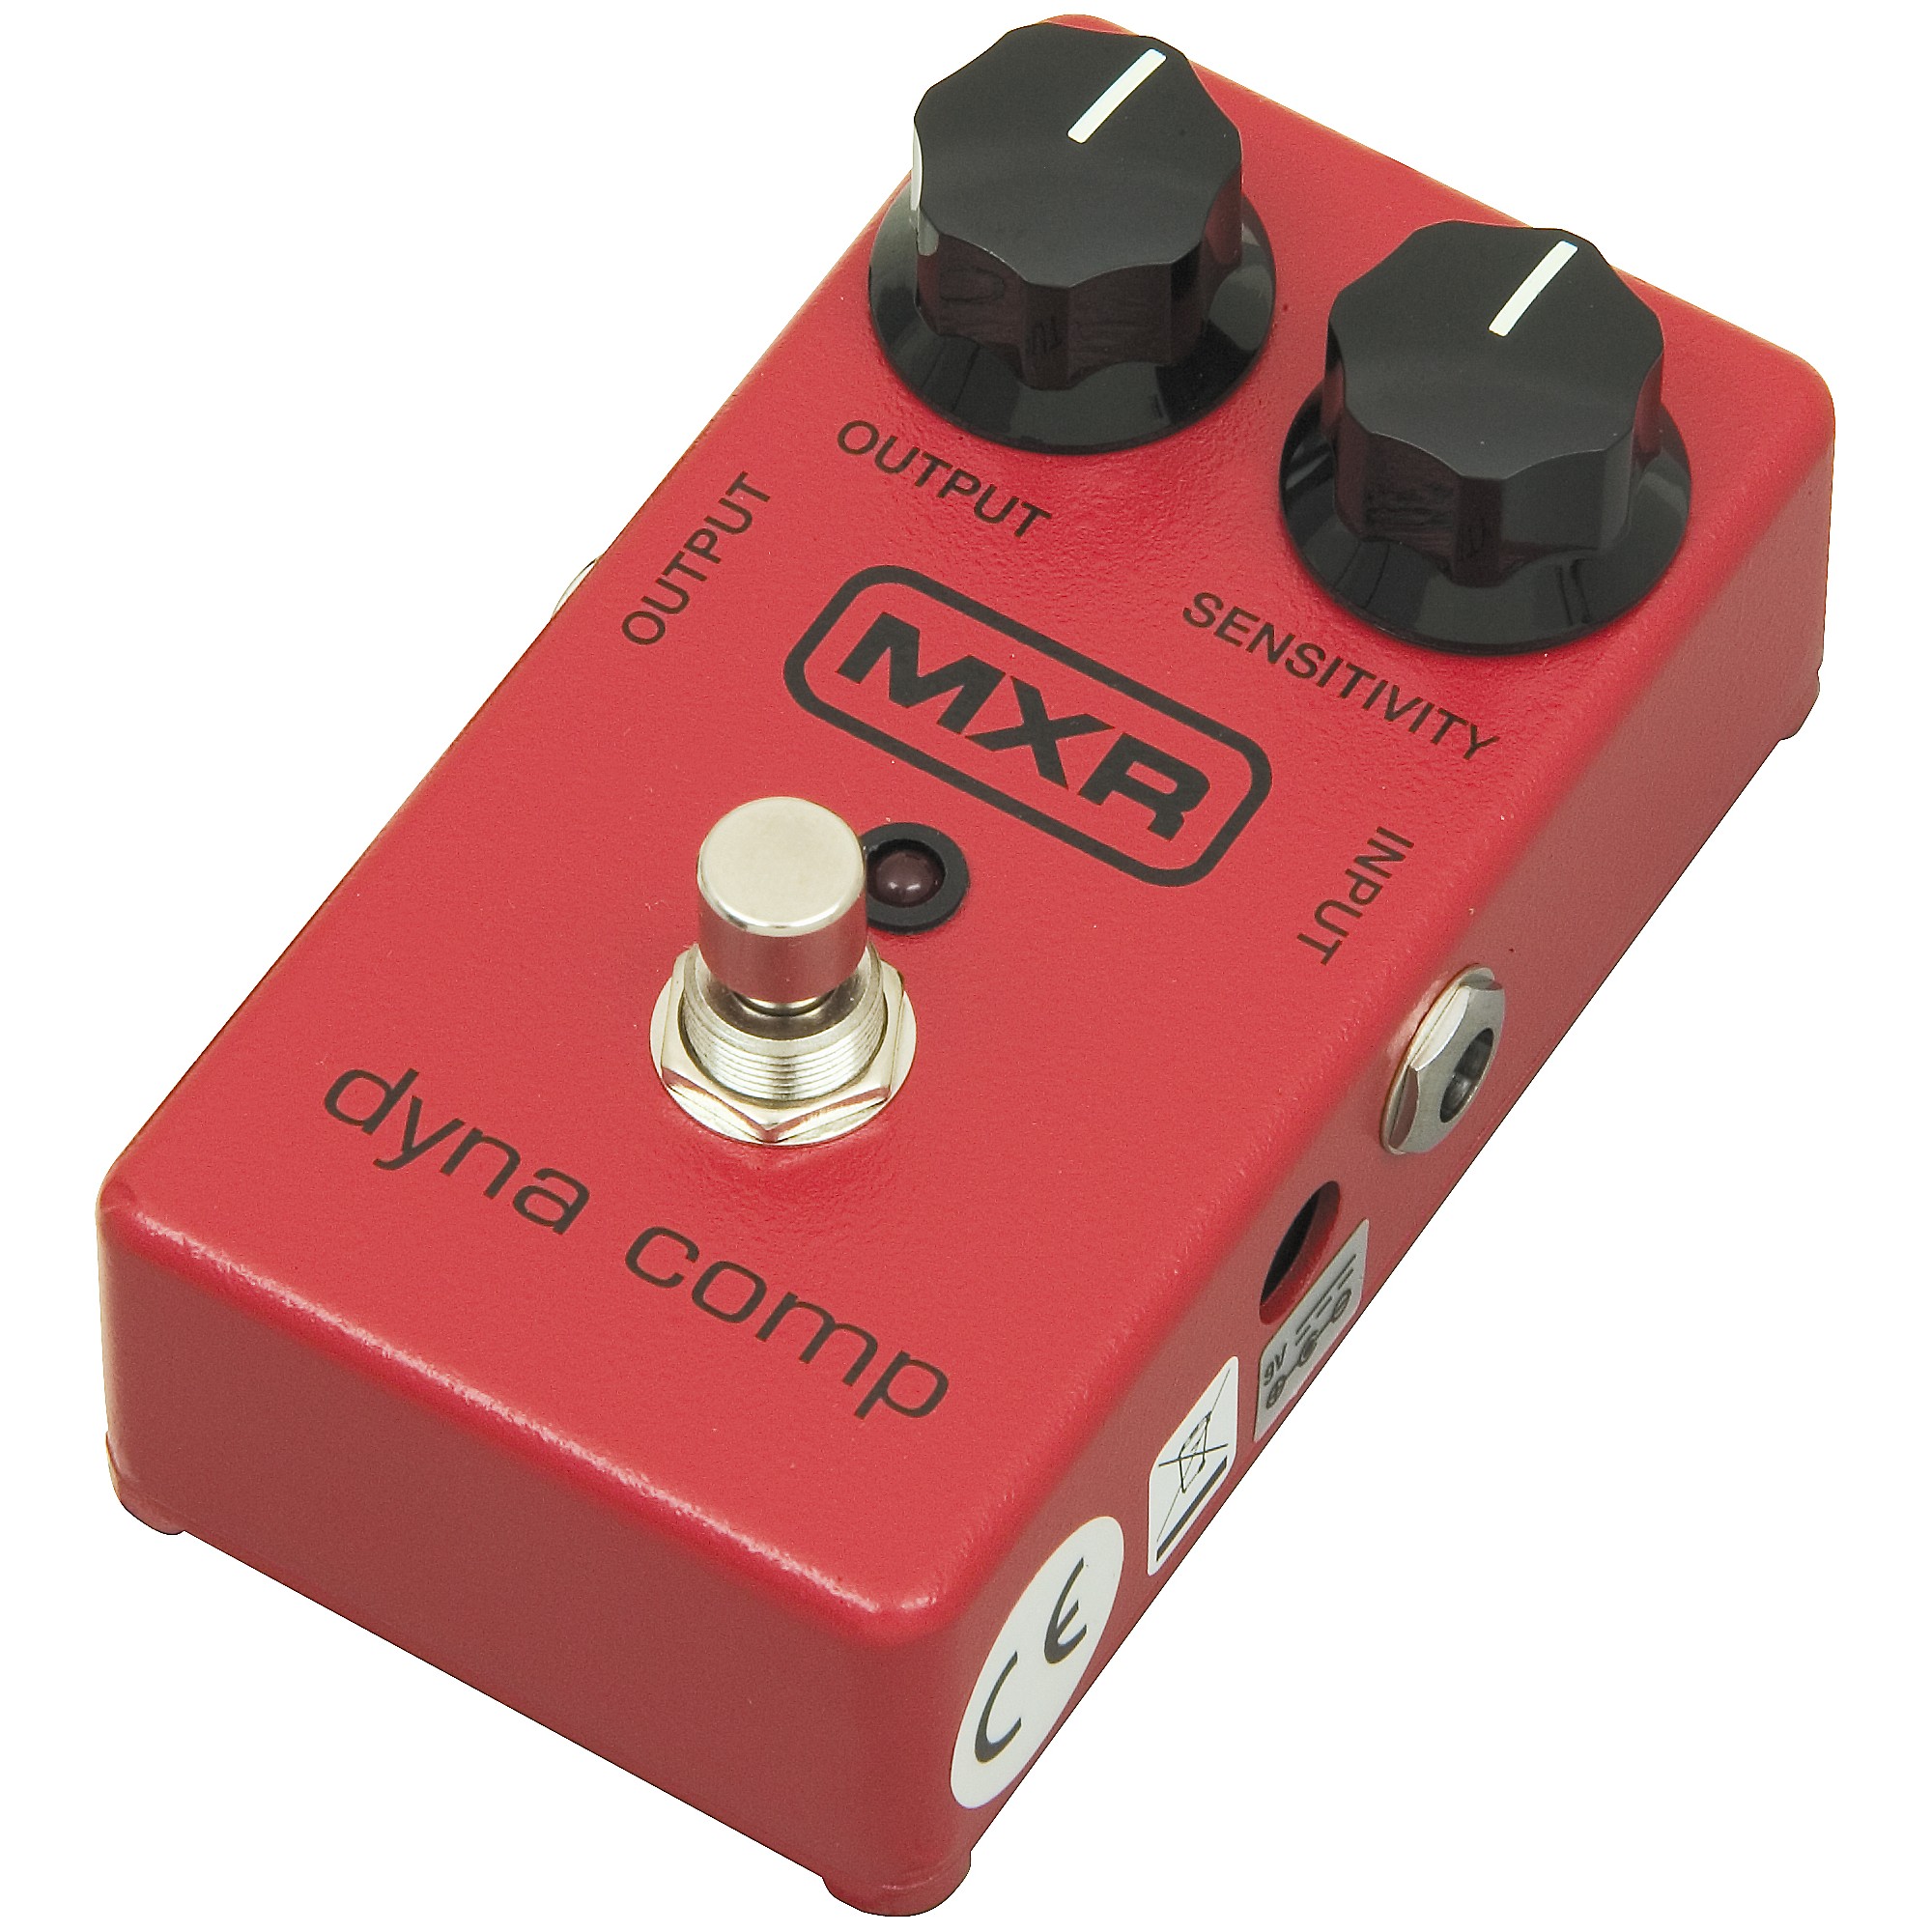 MXR M-102 Dyna Comp Compressor Pedal | Guitar Center